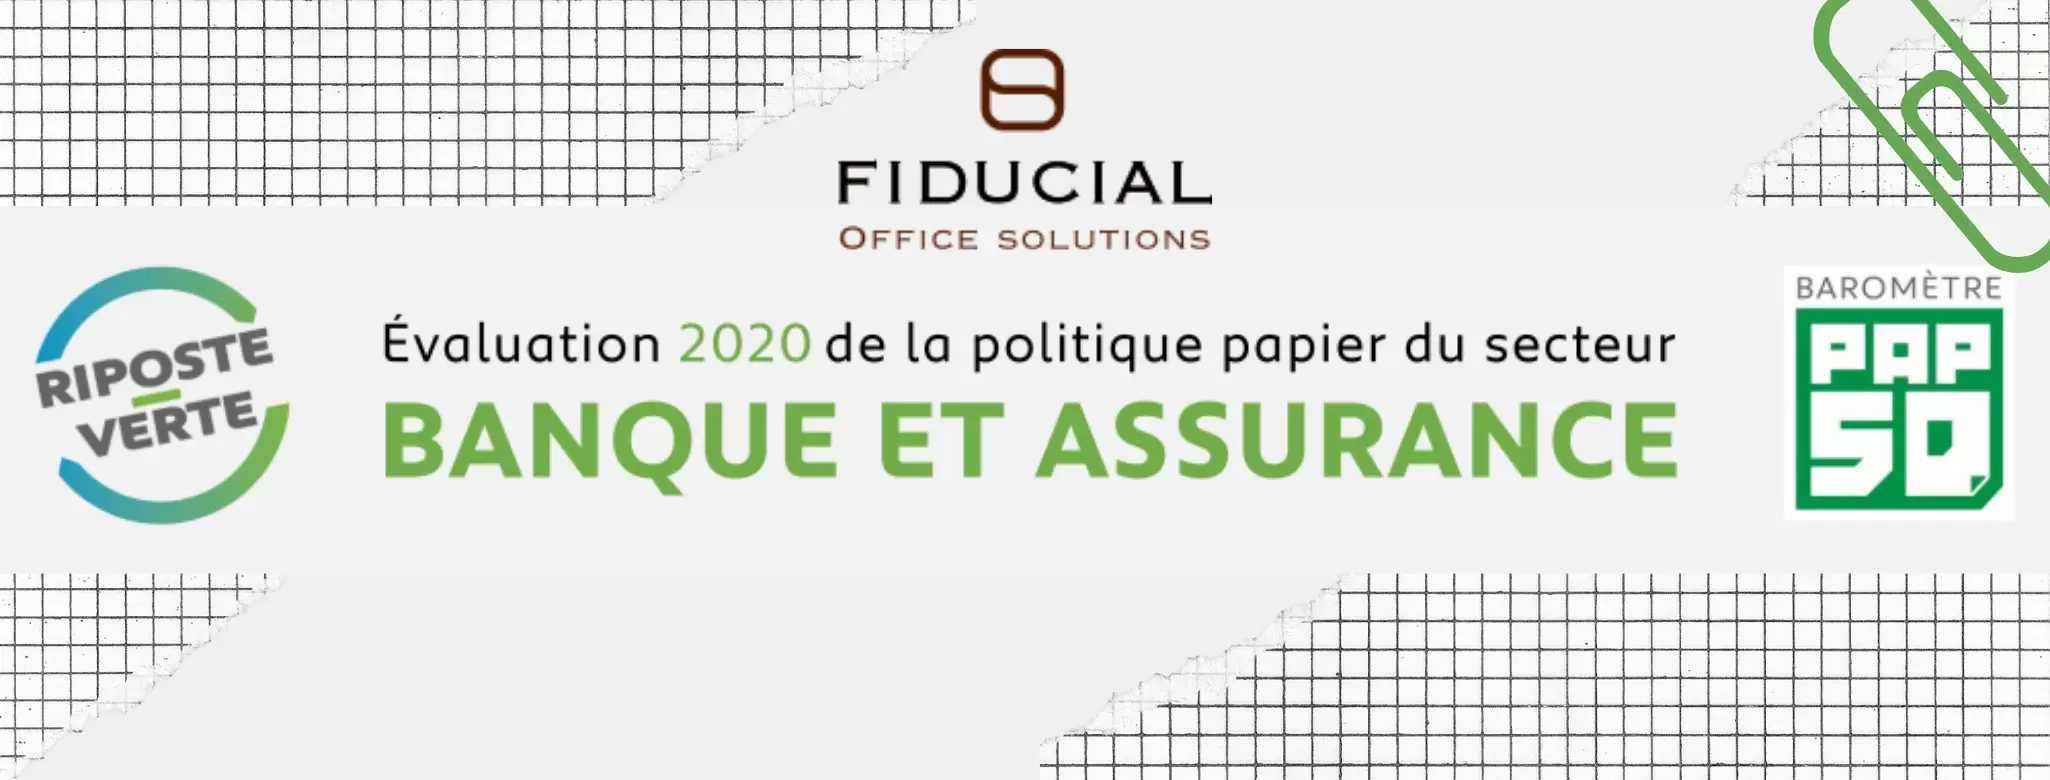 FIDUCIAL Office Solutions partenaire du Baromètre PAP50 2020 / Riposte Verte